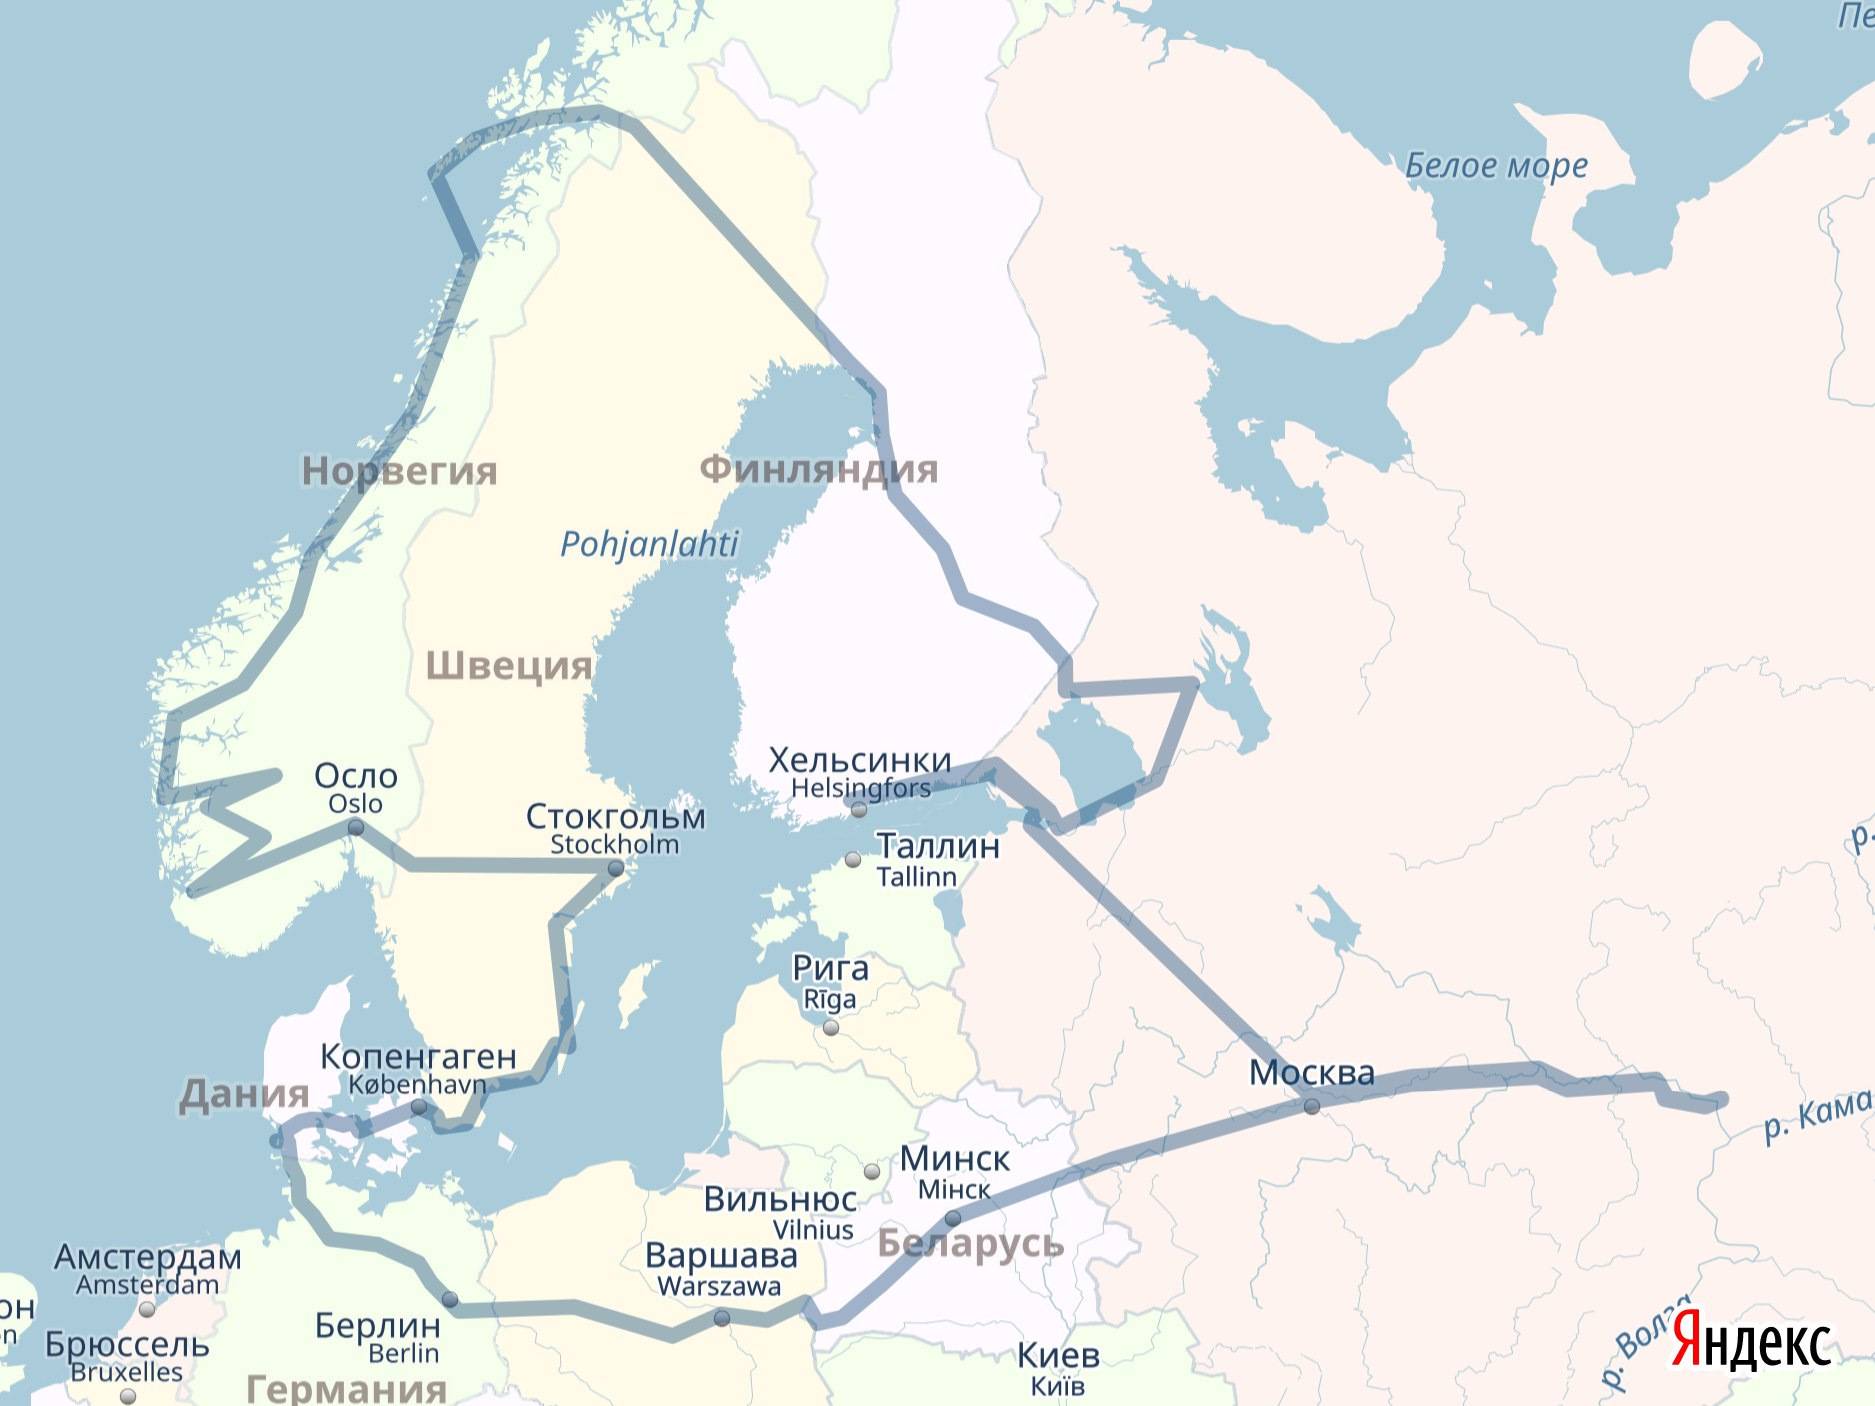 «скандинавская сага», экскурсионный тур финляндия - швеция - норвегия - дания (6 дней) : туры в скандинавию от туроператора нисса-тур